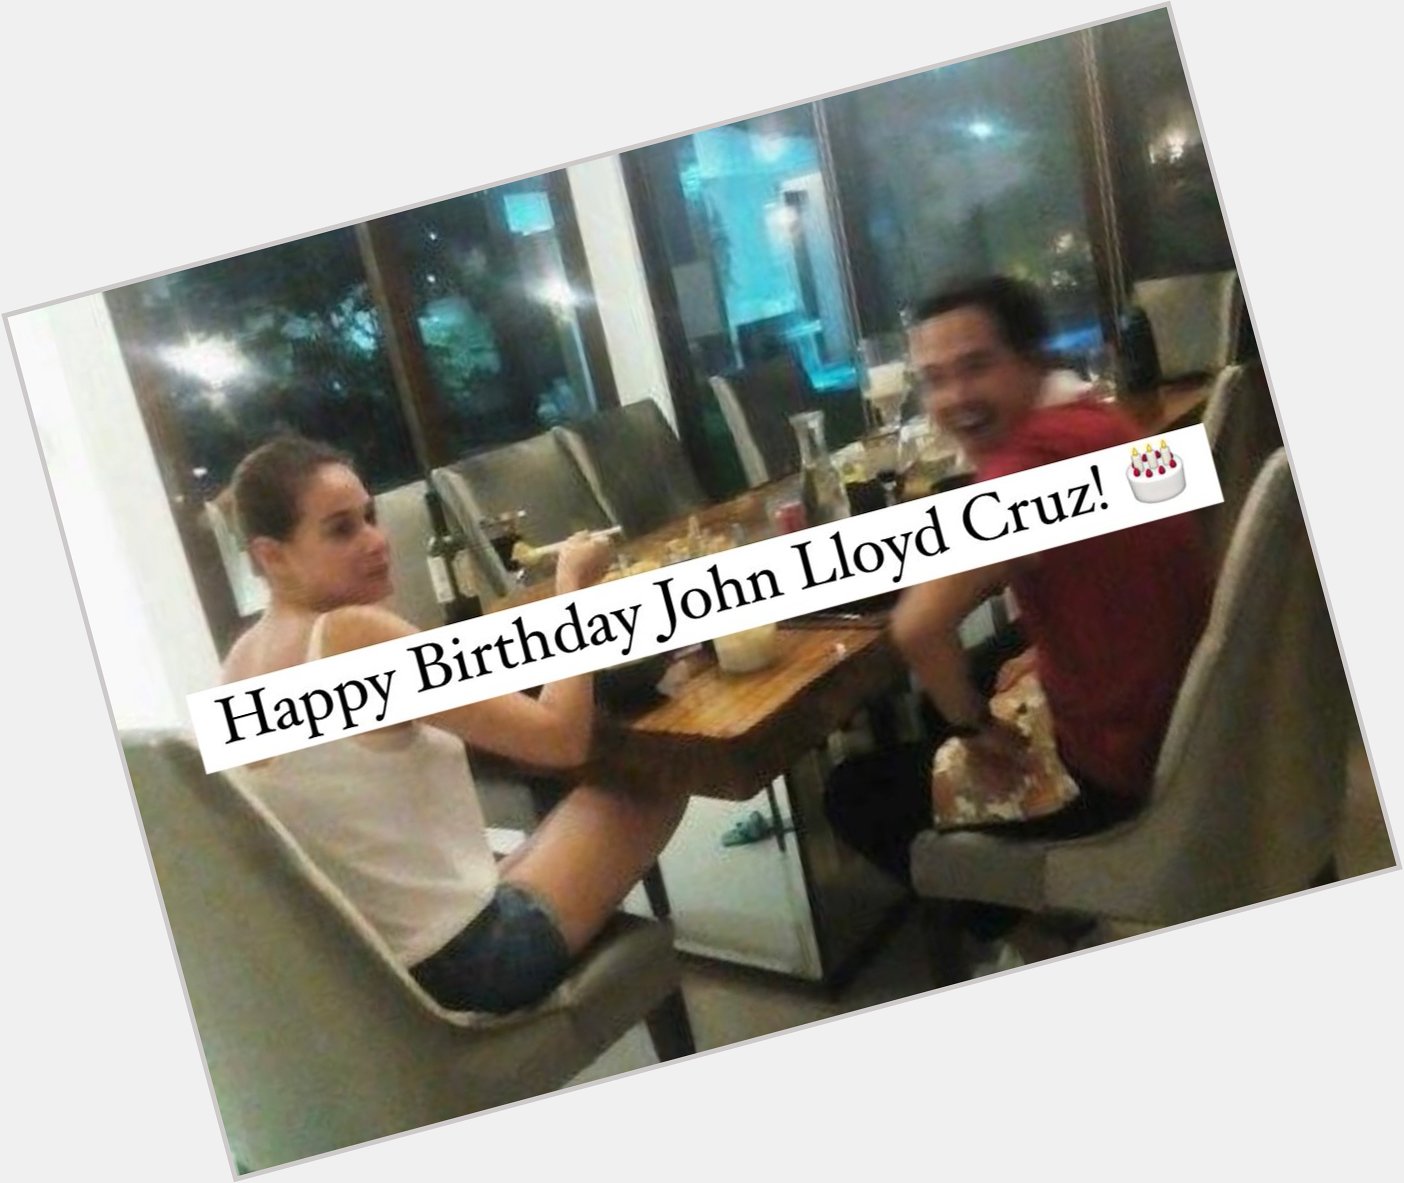 Happy Birthday John Lloyd Cruz! 